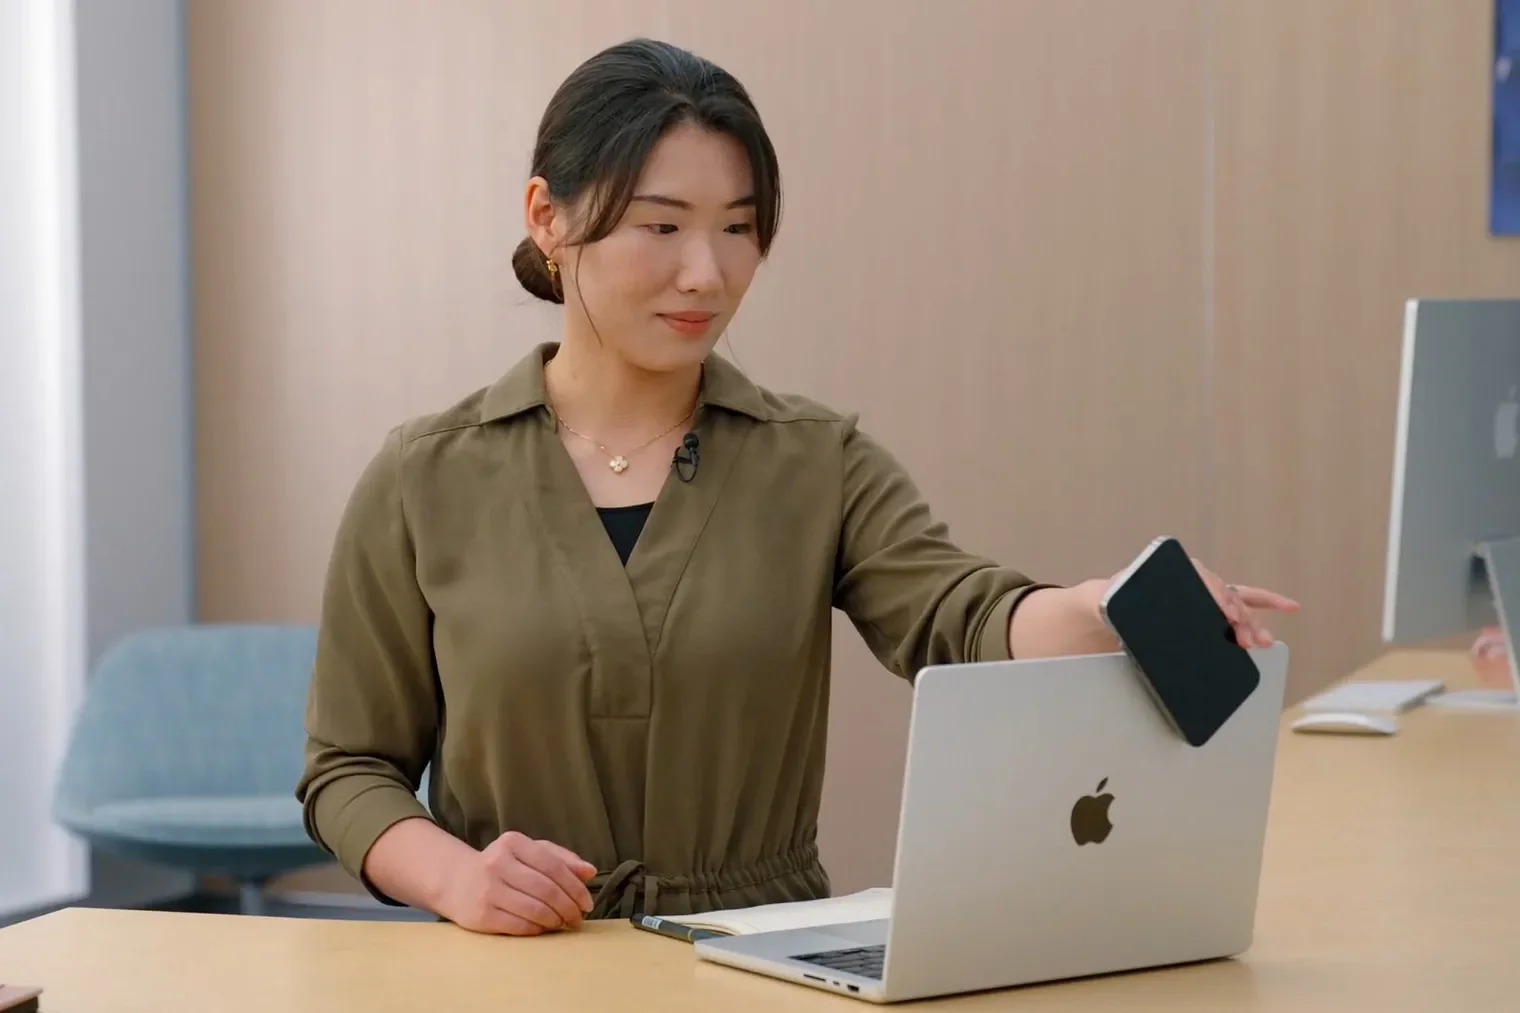 Περισσότερες πληροφορίες για "Η Apple εξηγεί πως μπορούν οι χρήστες να αξιοποιήσουν πλήρως το iPhone τους ως webcam στο Mac"